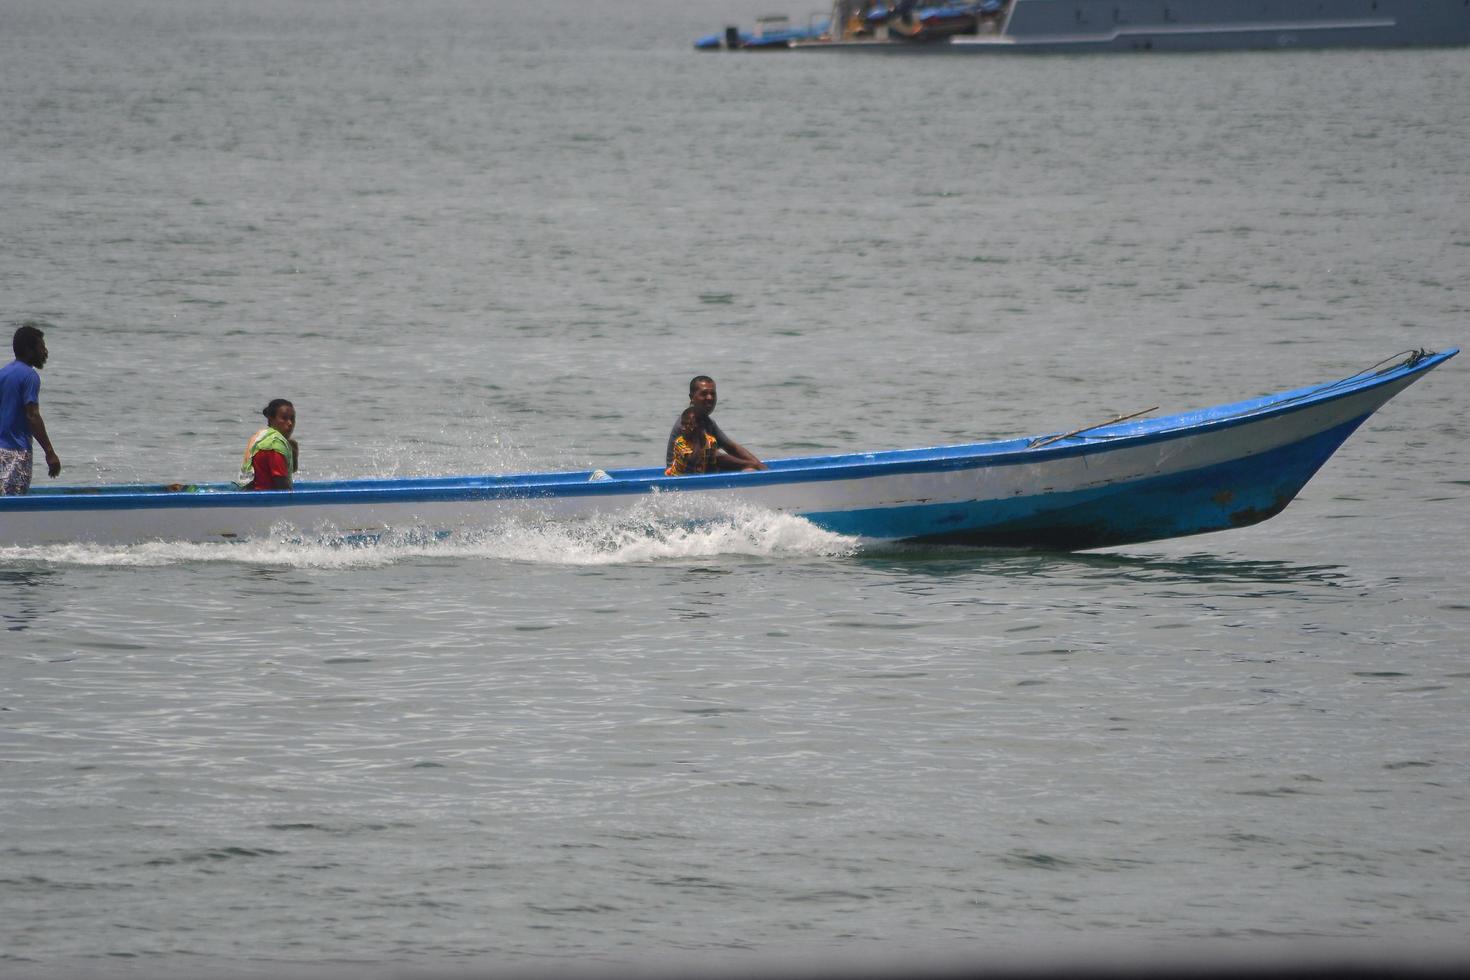 sorong, papouasie occidentale, indonésie, 2021. villageois traversant la mer avec un bateau en bois. photo